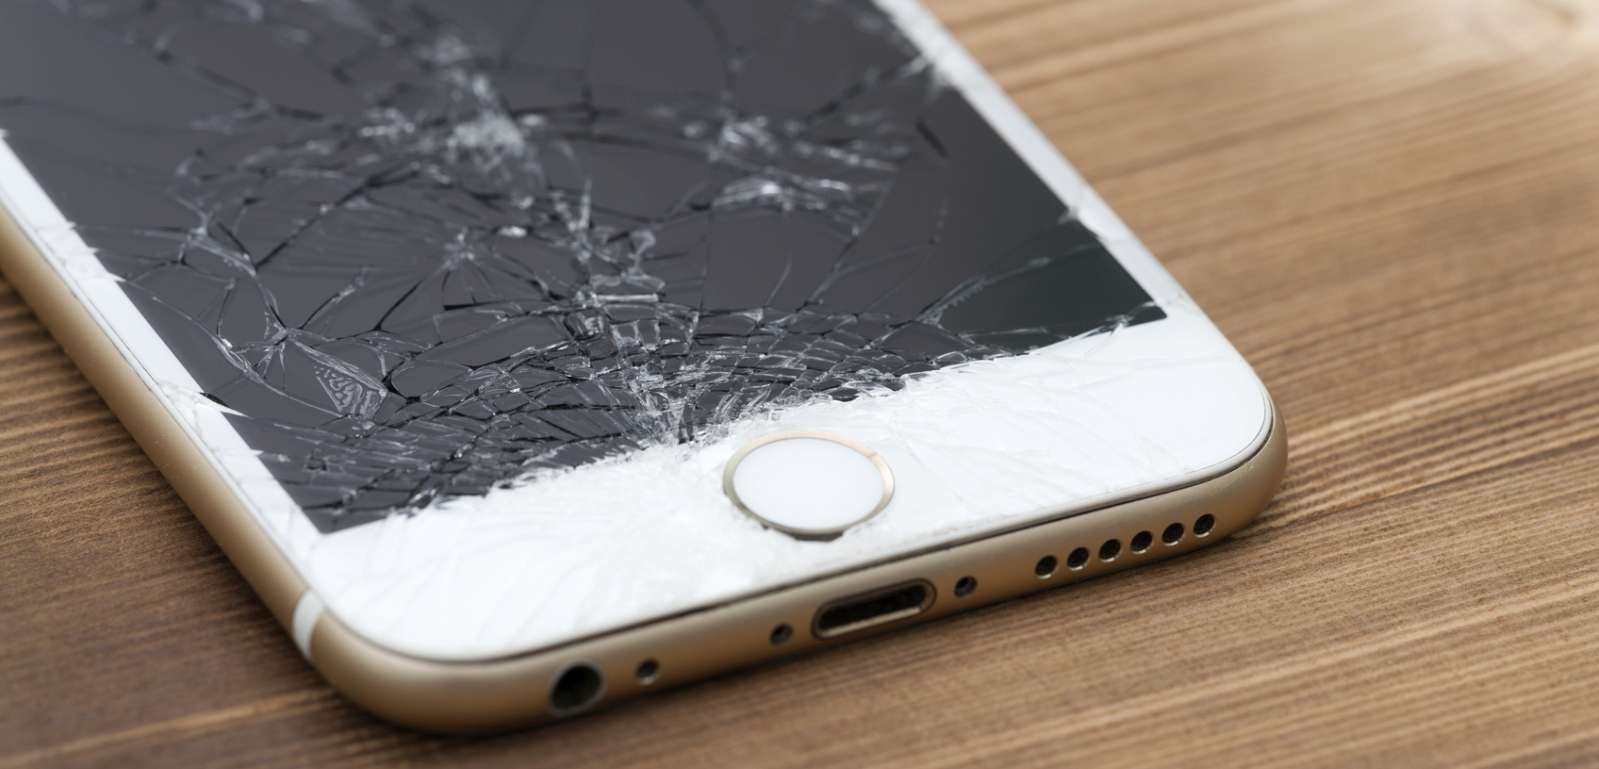 Apple opatentowało powłokę zabezpieczającą mobilny hardware przed uszkodzeniami